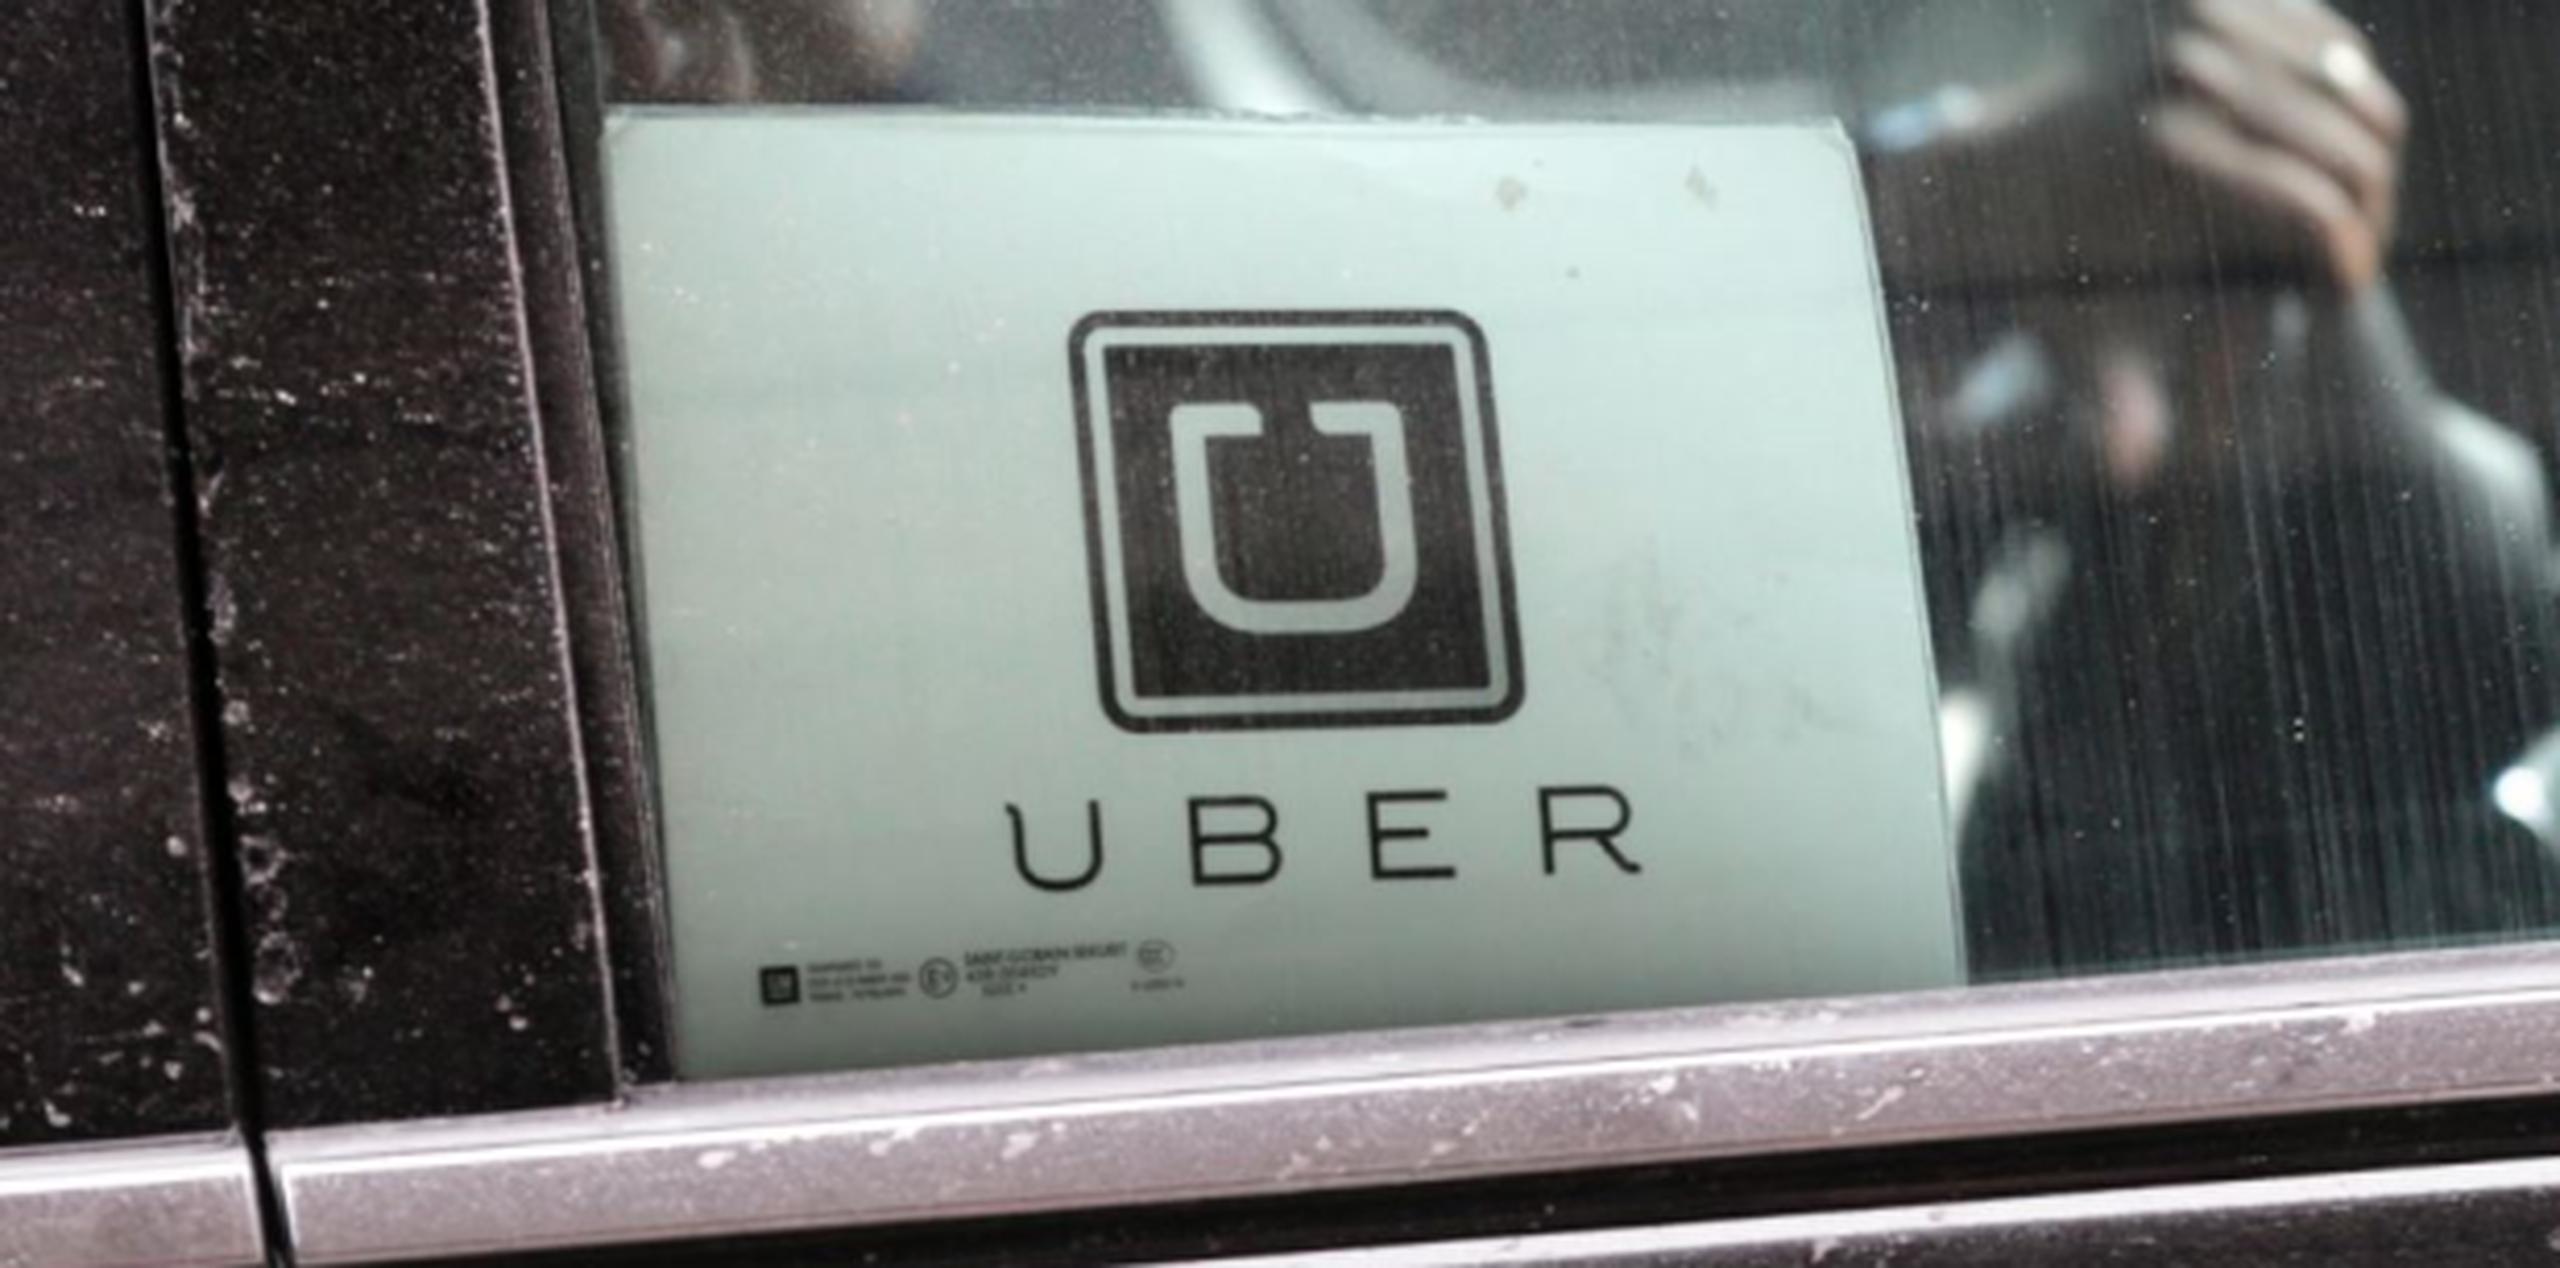 Hasta el mes pasado, Levandowski había estado al frente de la división de vehículos autónomos de Uber. (AP)